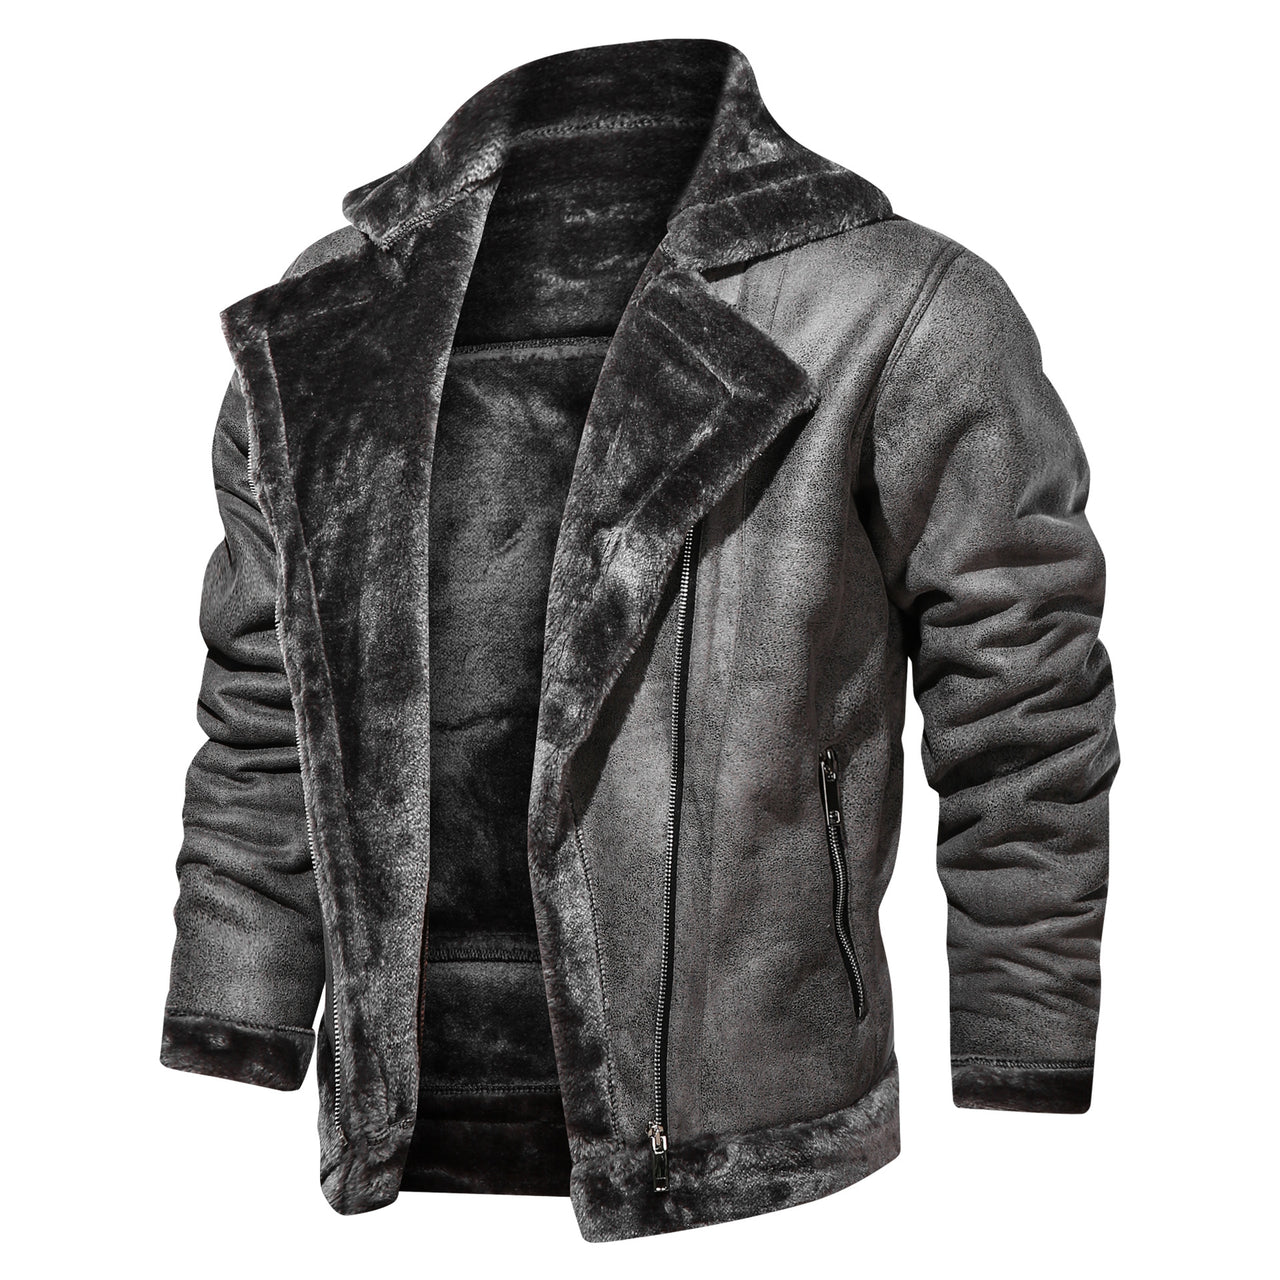 Leather Stylish Cool Pilot Jackets (3)